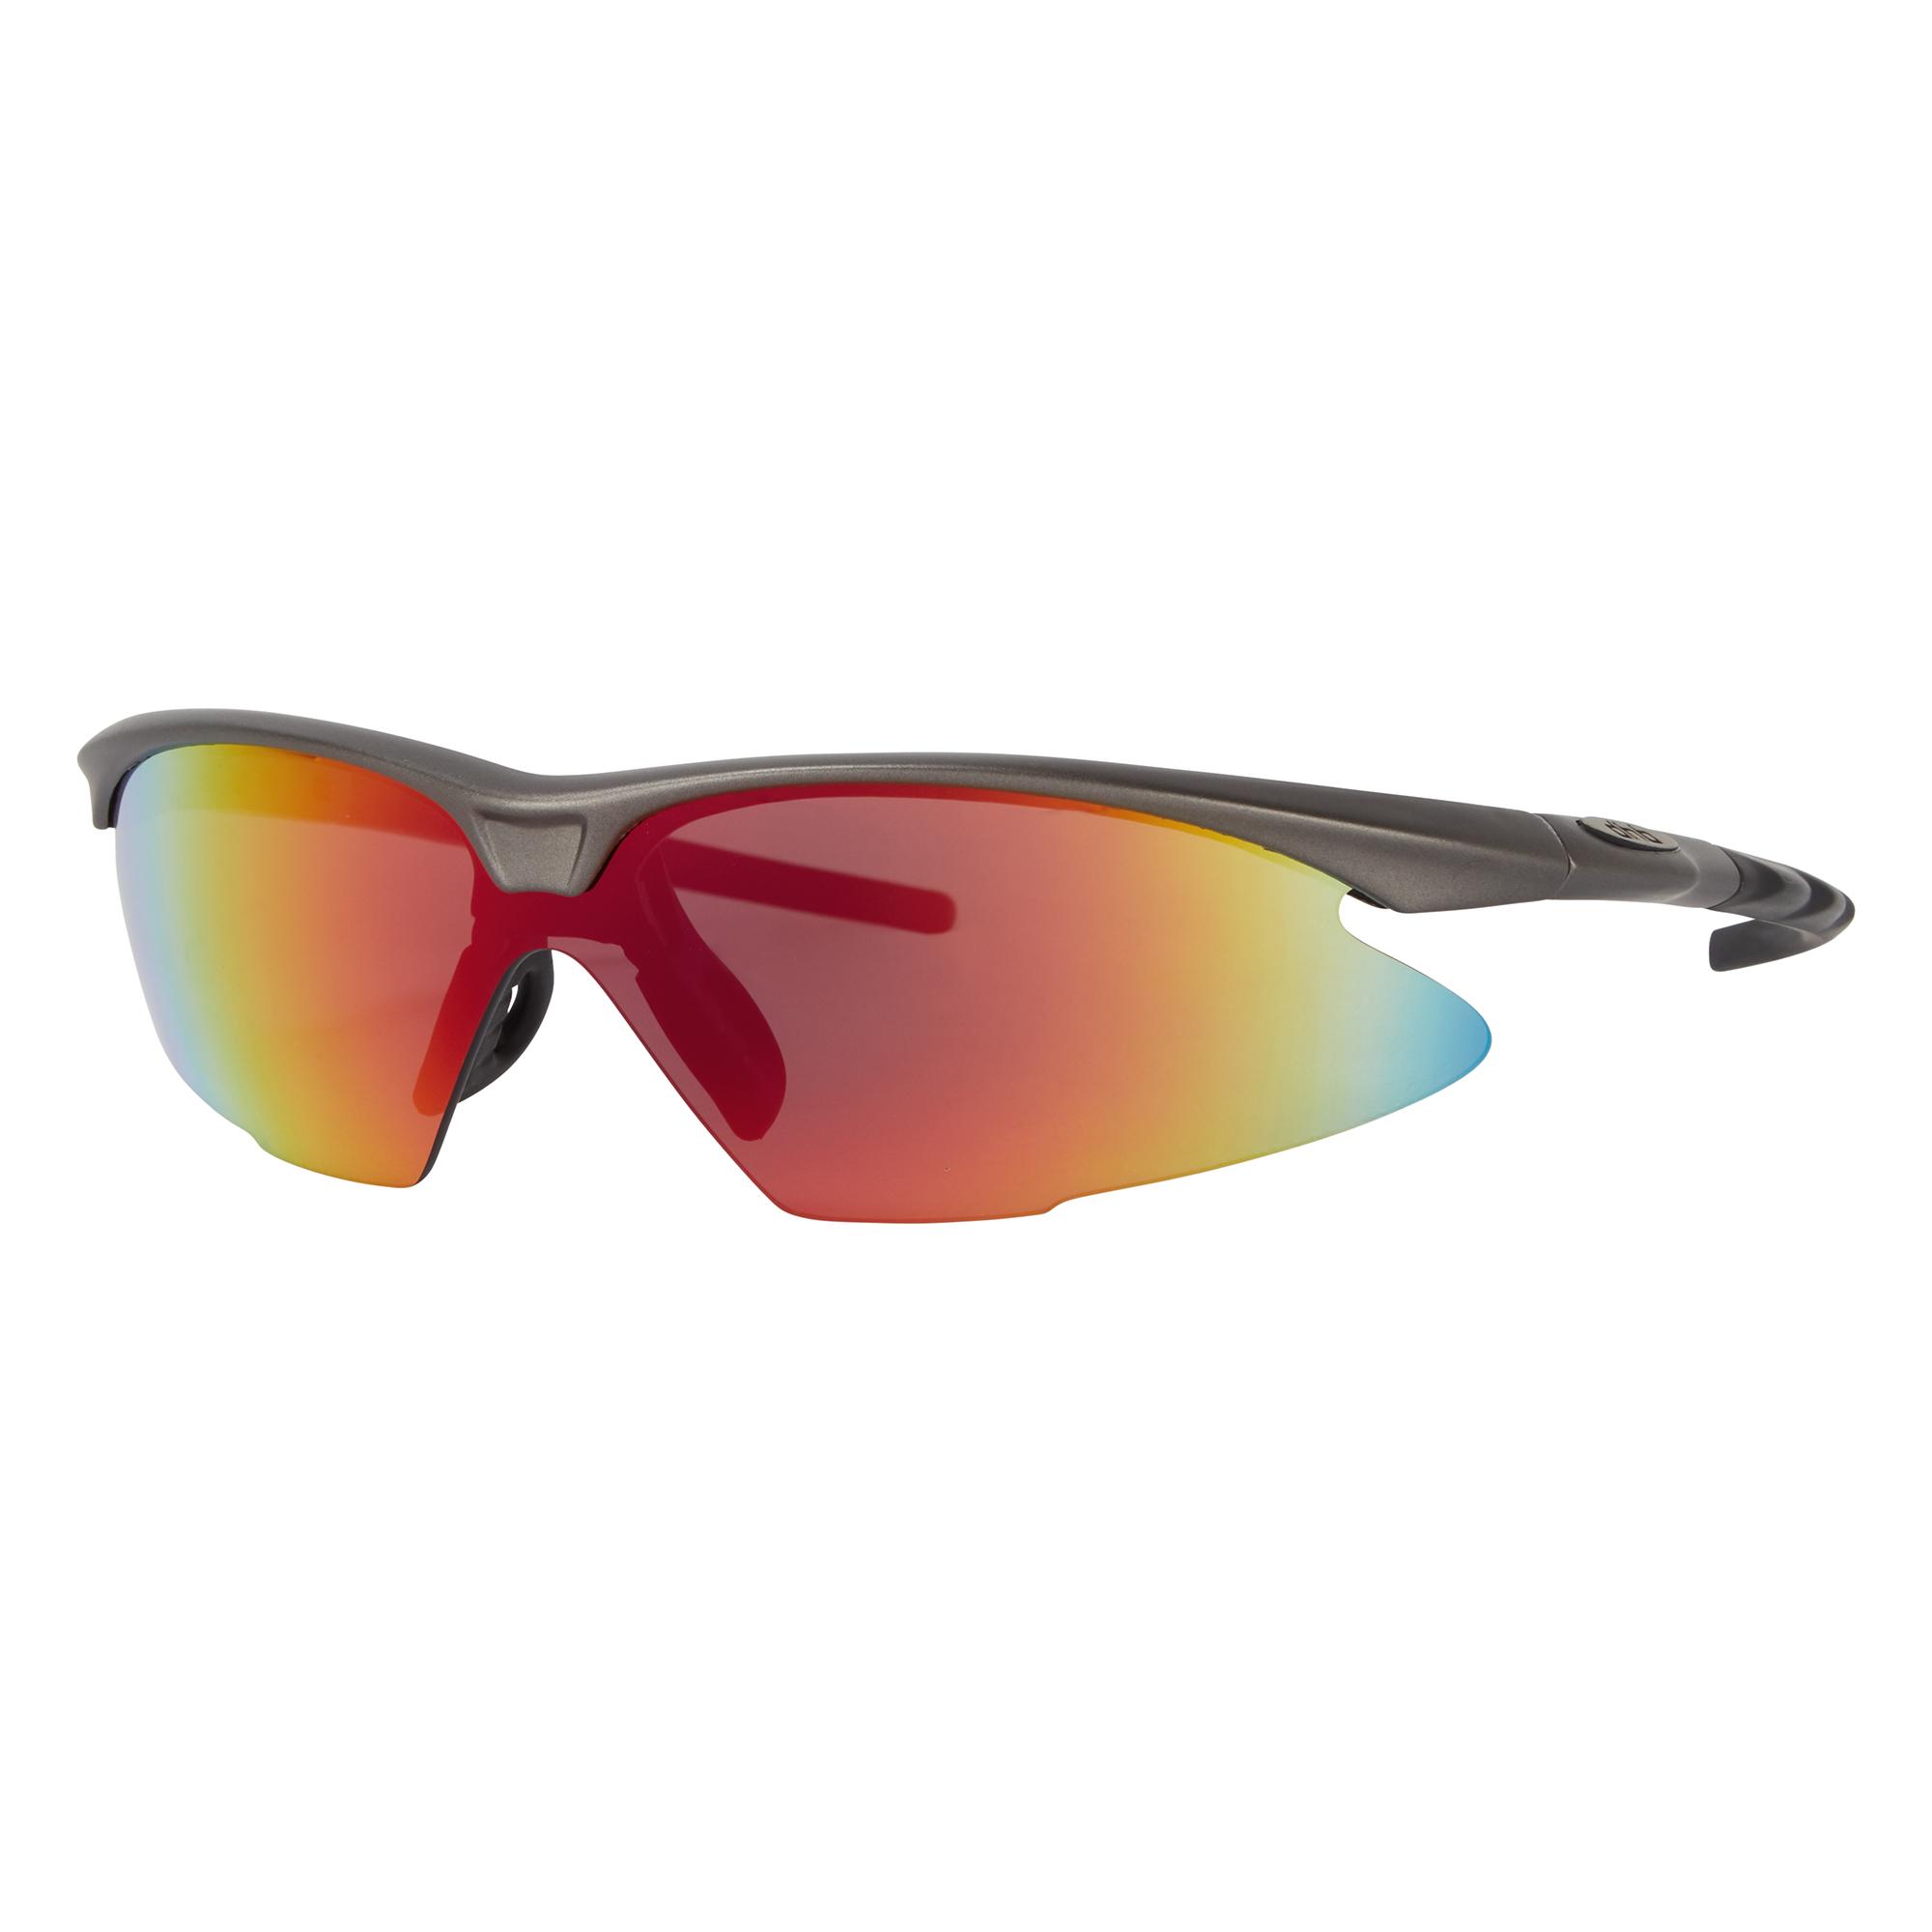 Dhb Pro Triple Lens Sunglasses - Grey